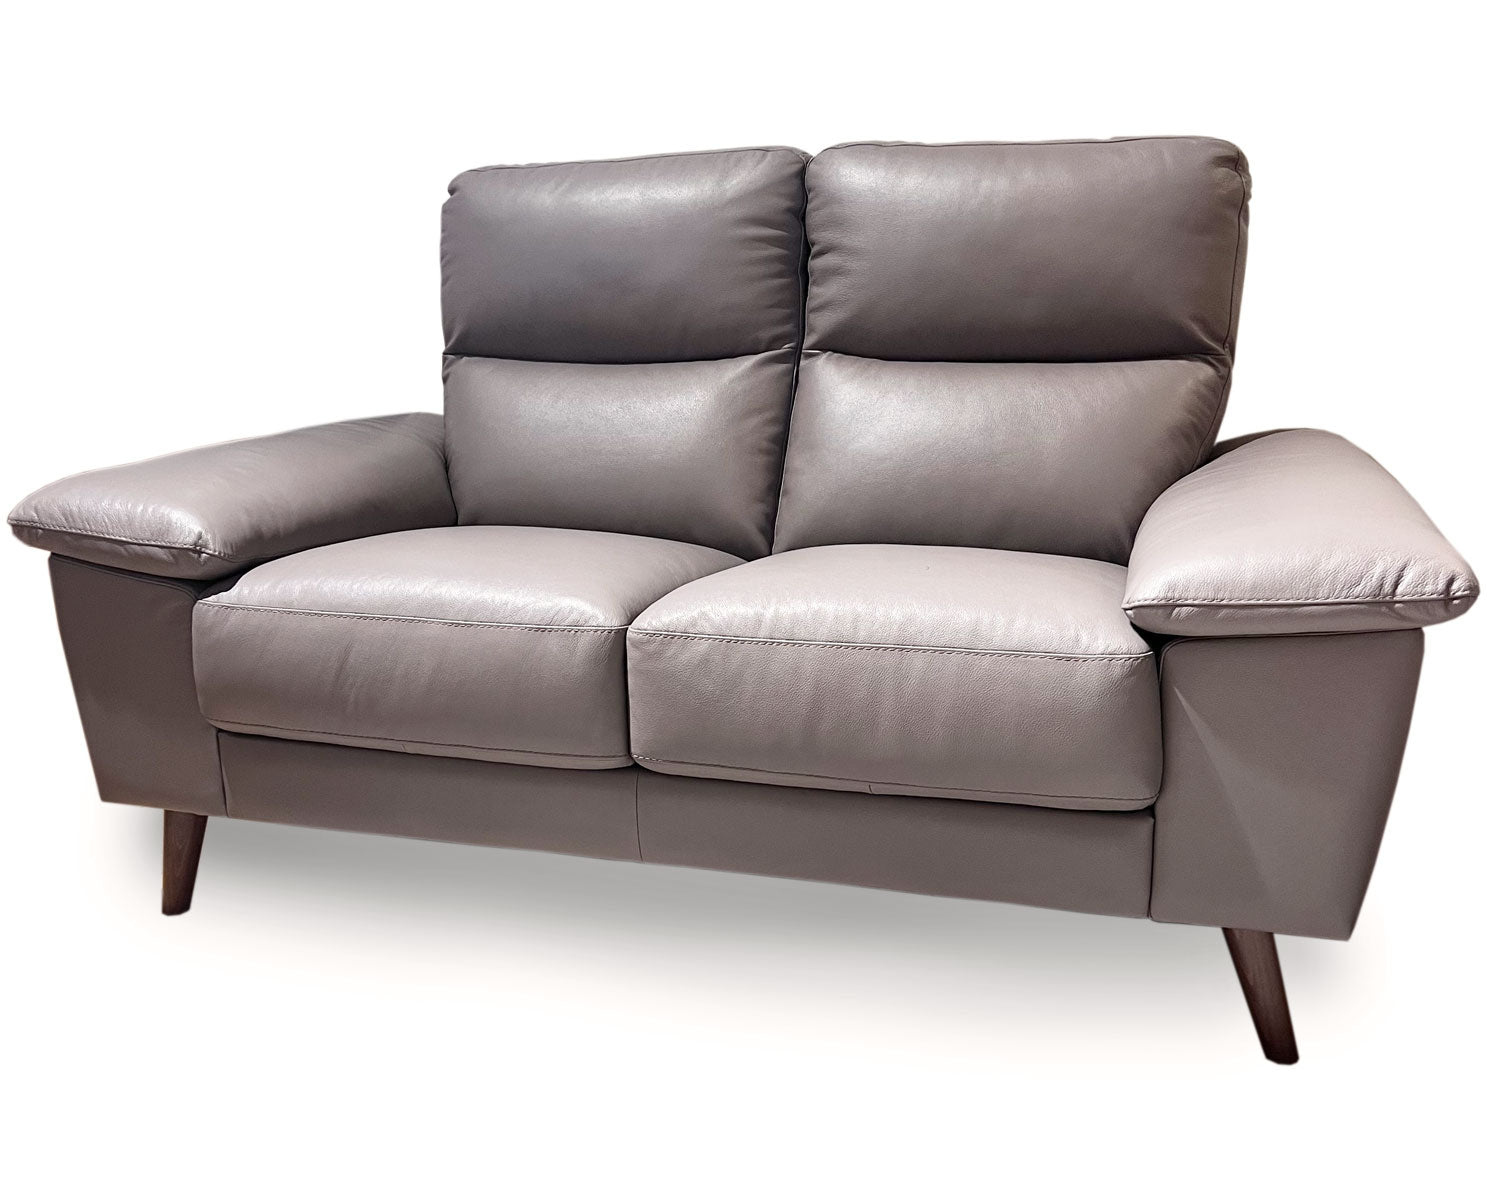 Tamigi Leather 2 Seater Sofa